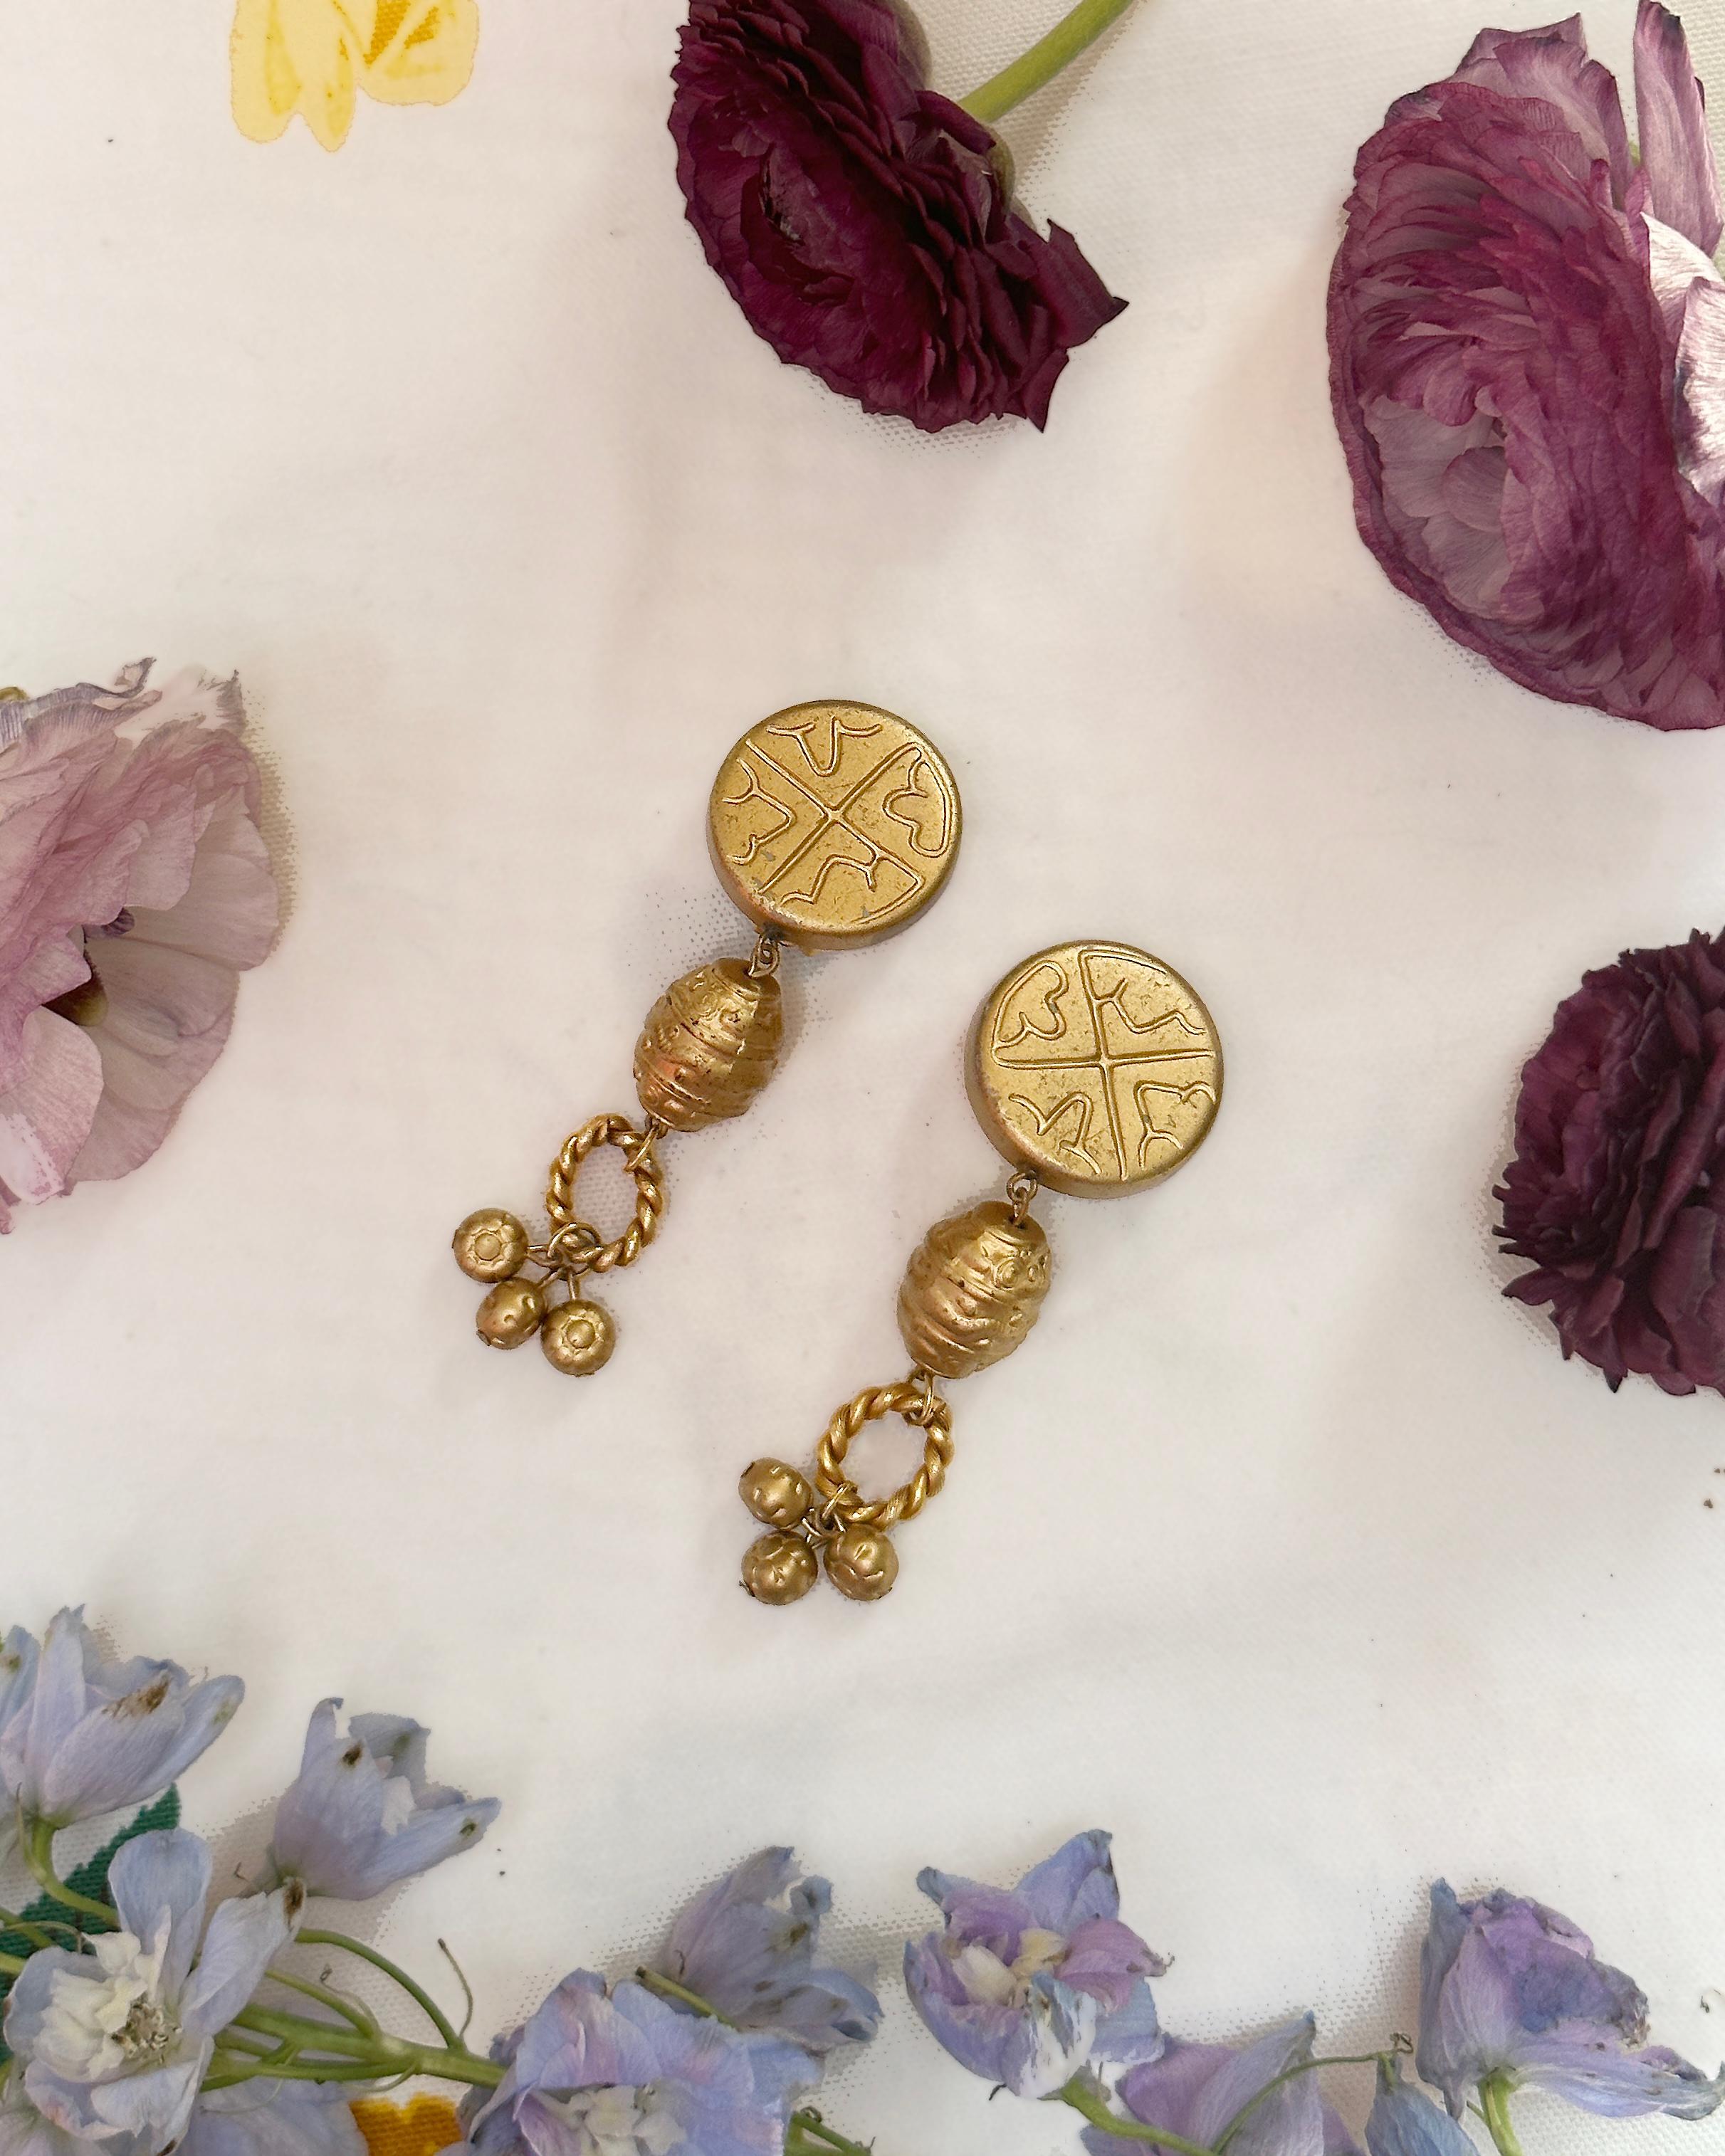 Diese goldenen Vintage-Ohrringe wurden in den 1980er Jahren von Les Bernard hergestellt. Die Ätzungen und skulpturalen Details sind eine Mischung aus etruskischem und pre-Columbianischem Schmuckstil. Ich liebe es, dass jeder einzelne Tropfen und